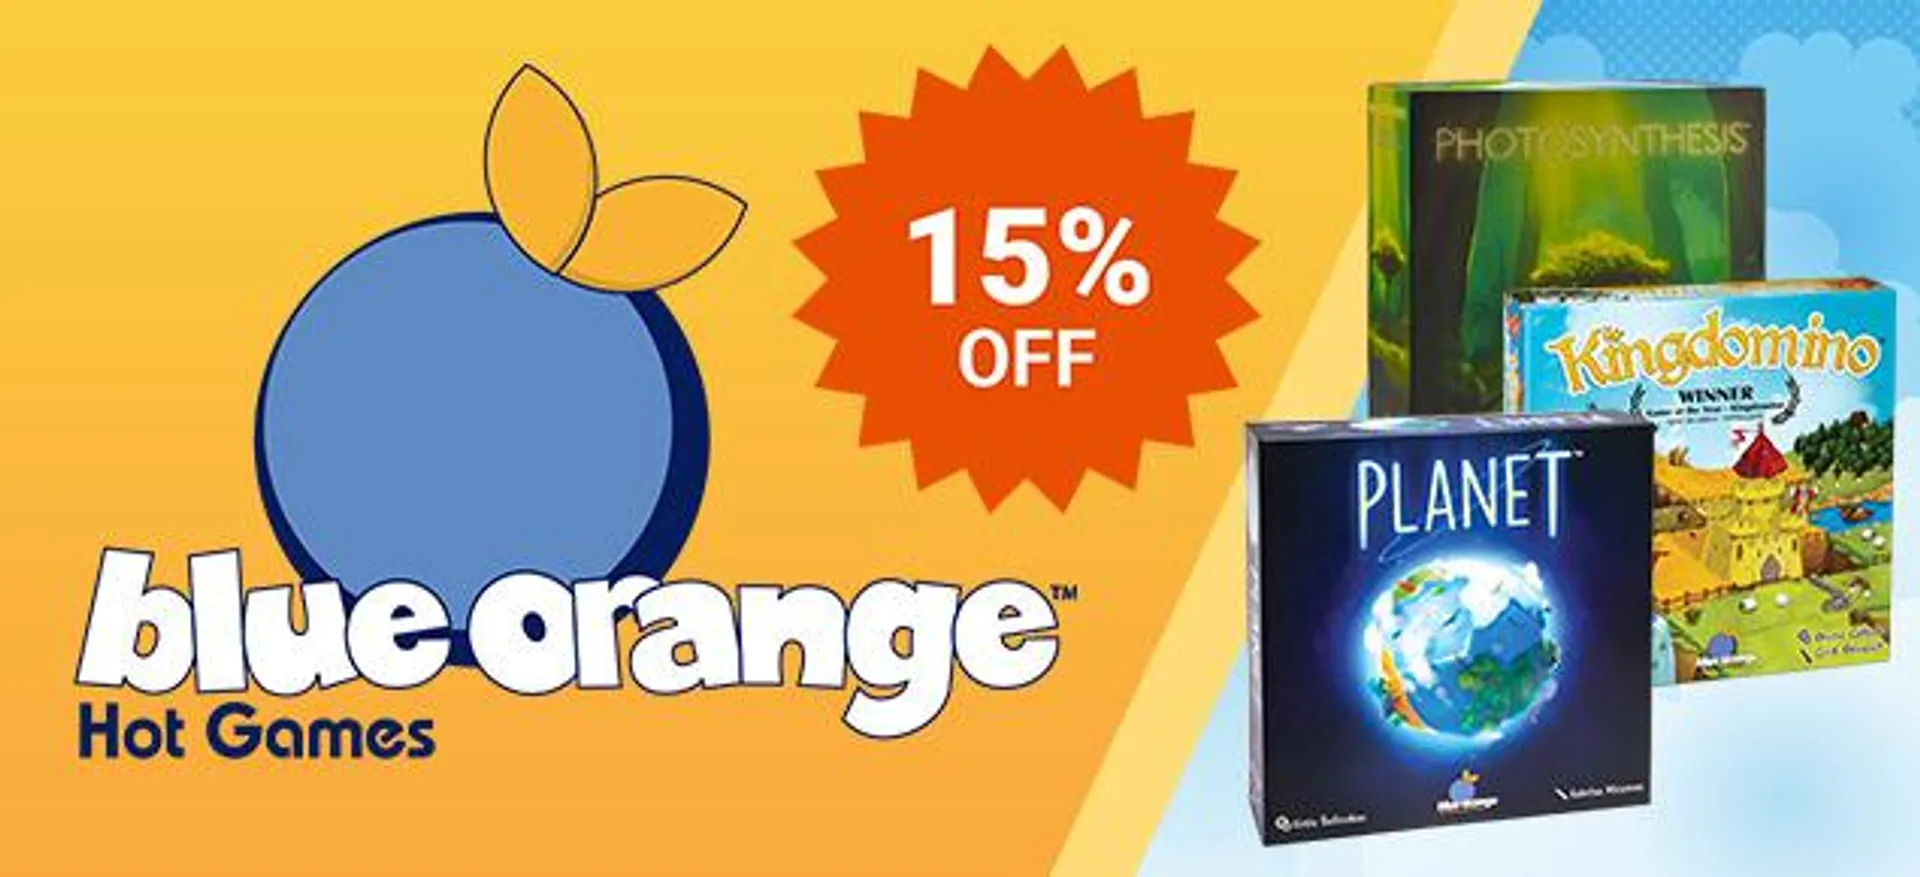 15% off Blue Orange Games